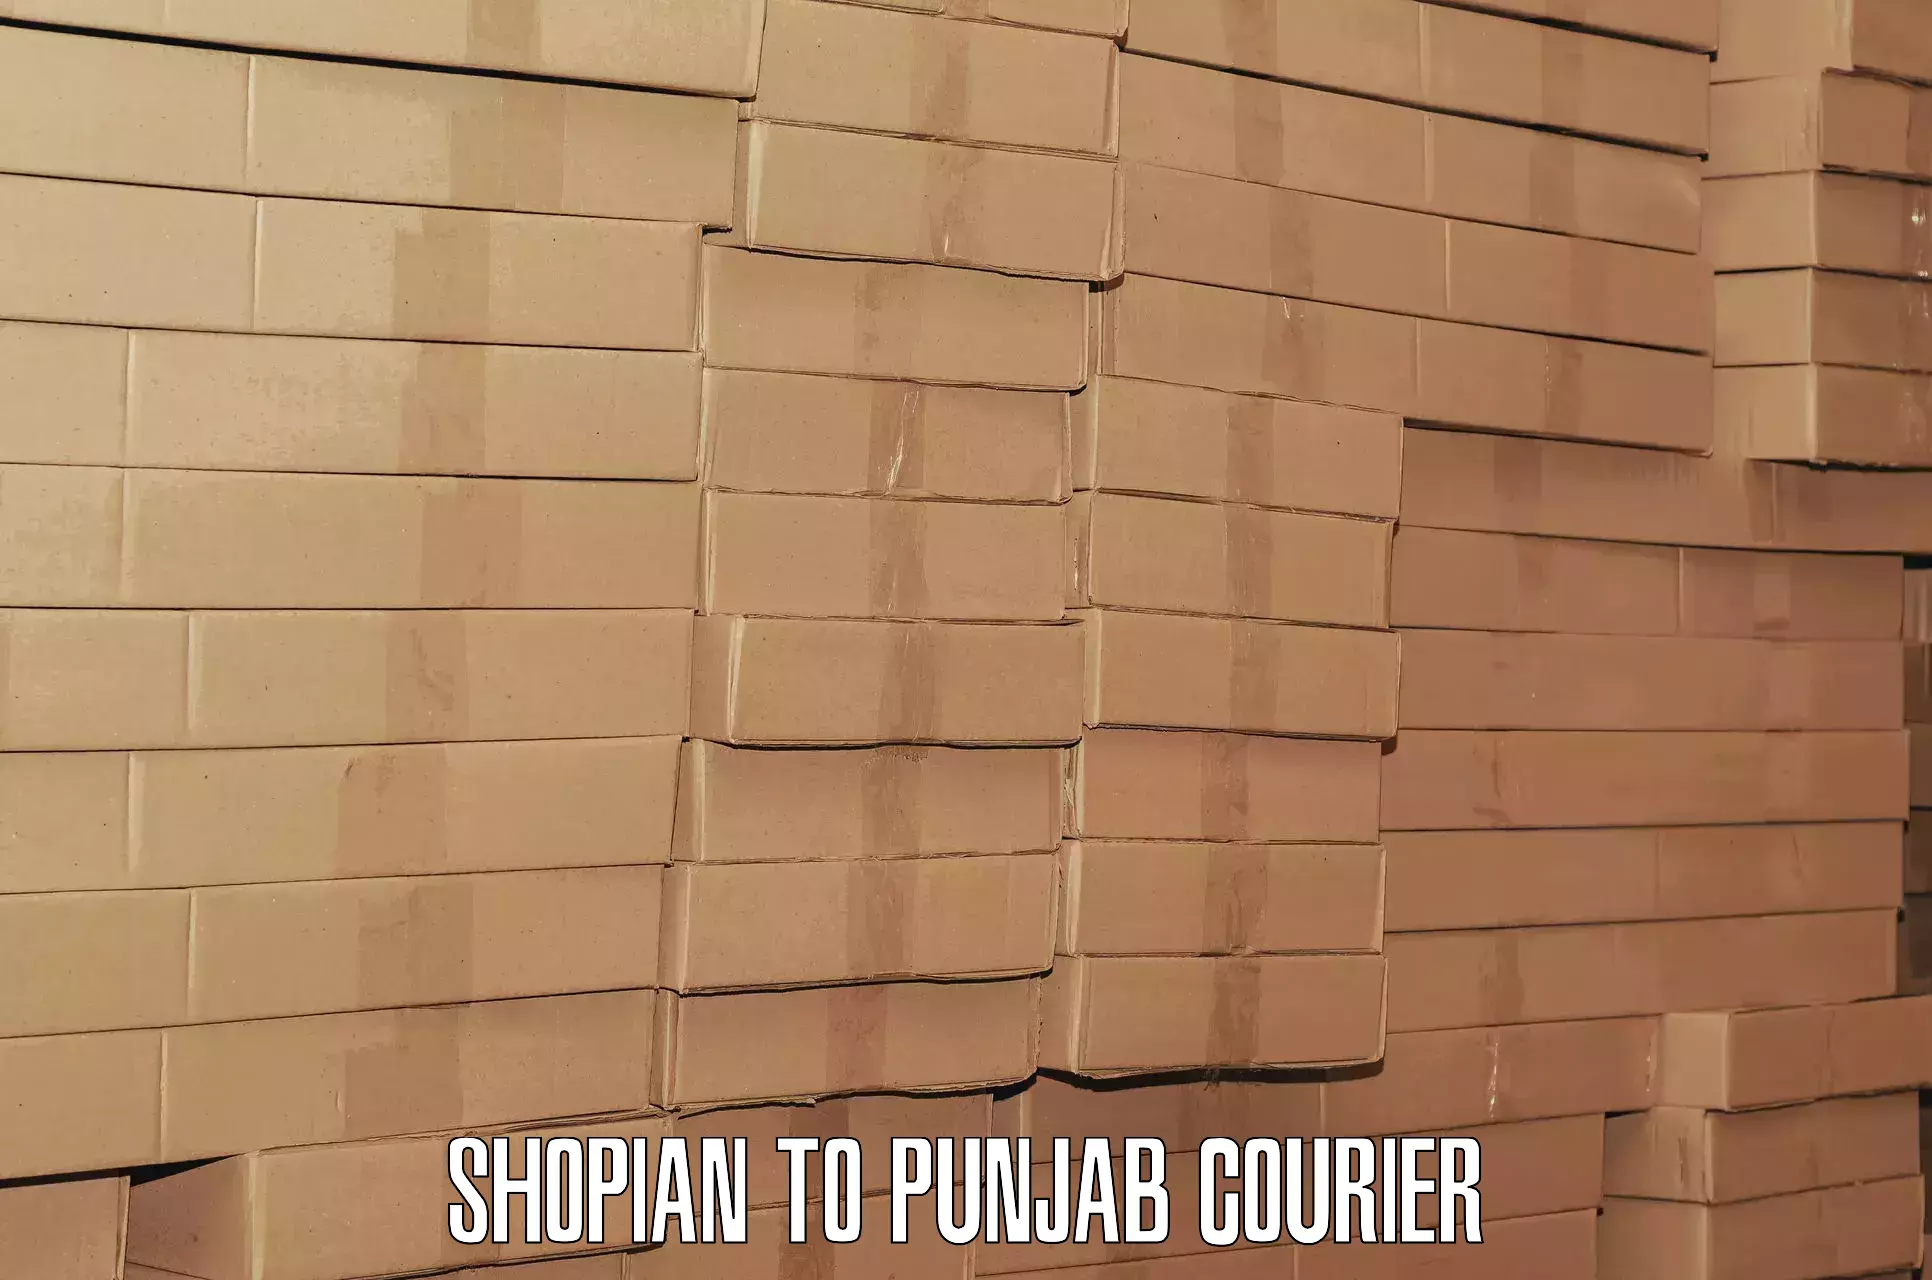 Express baggage shipping Shopian to Punjab